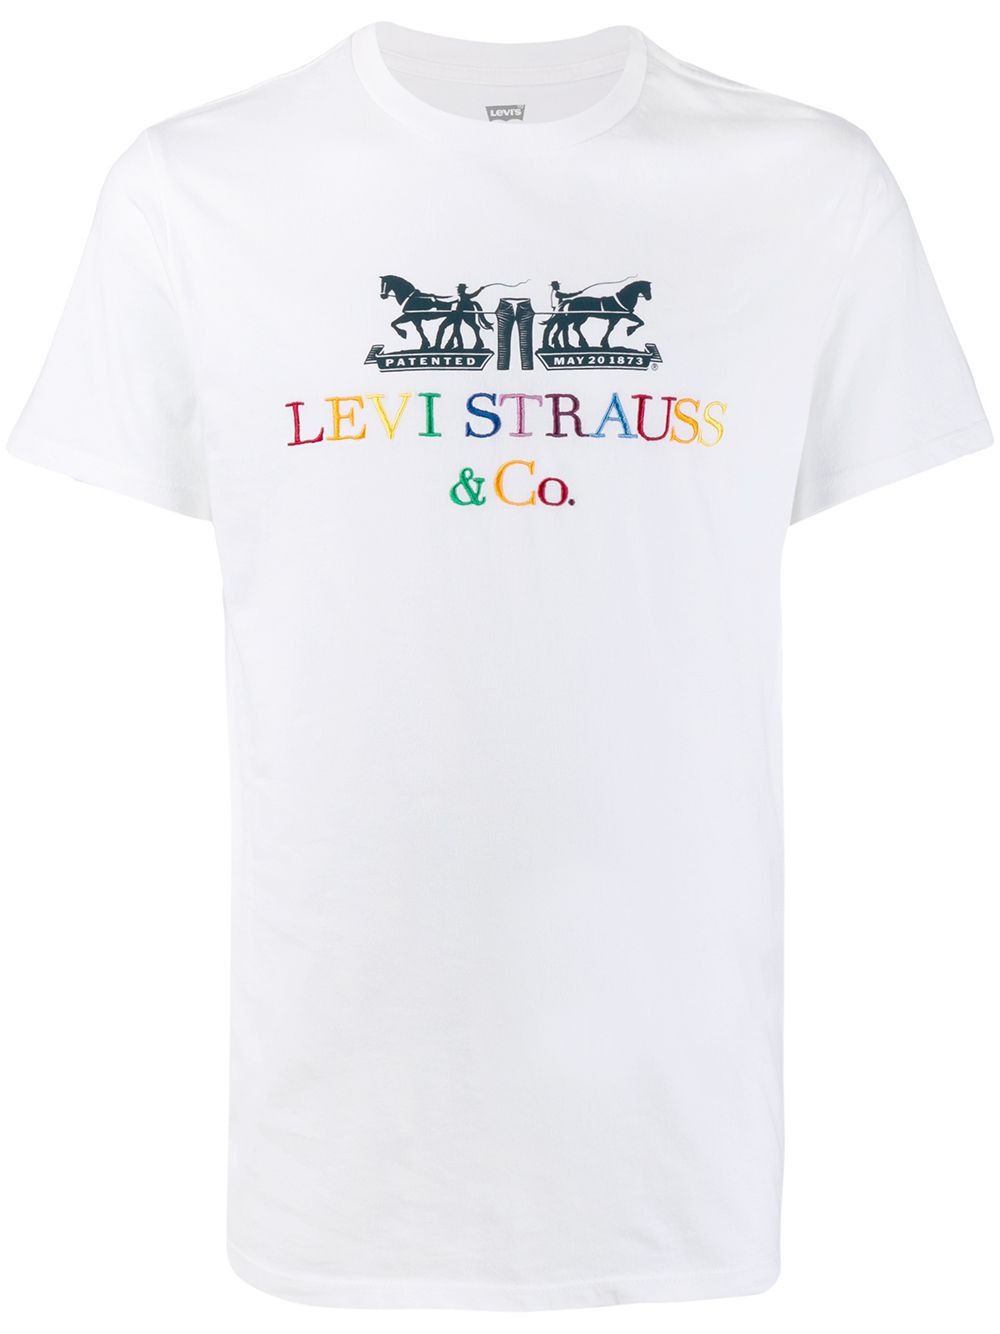 фото Levi's футболка с вышитым логотипом